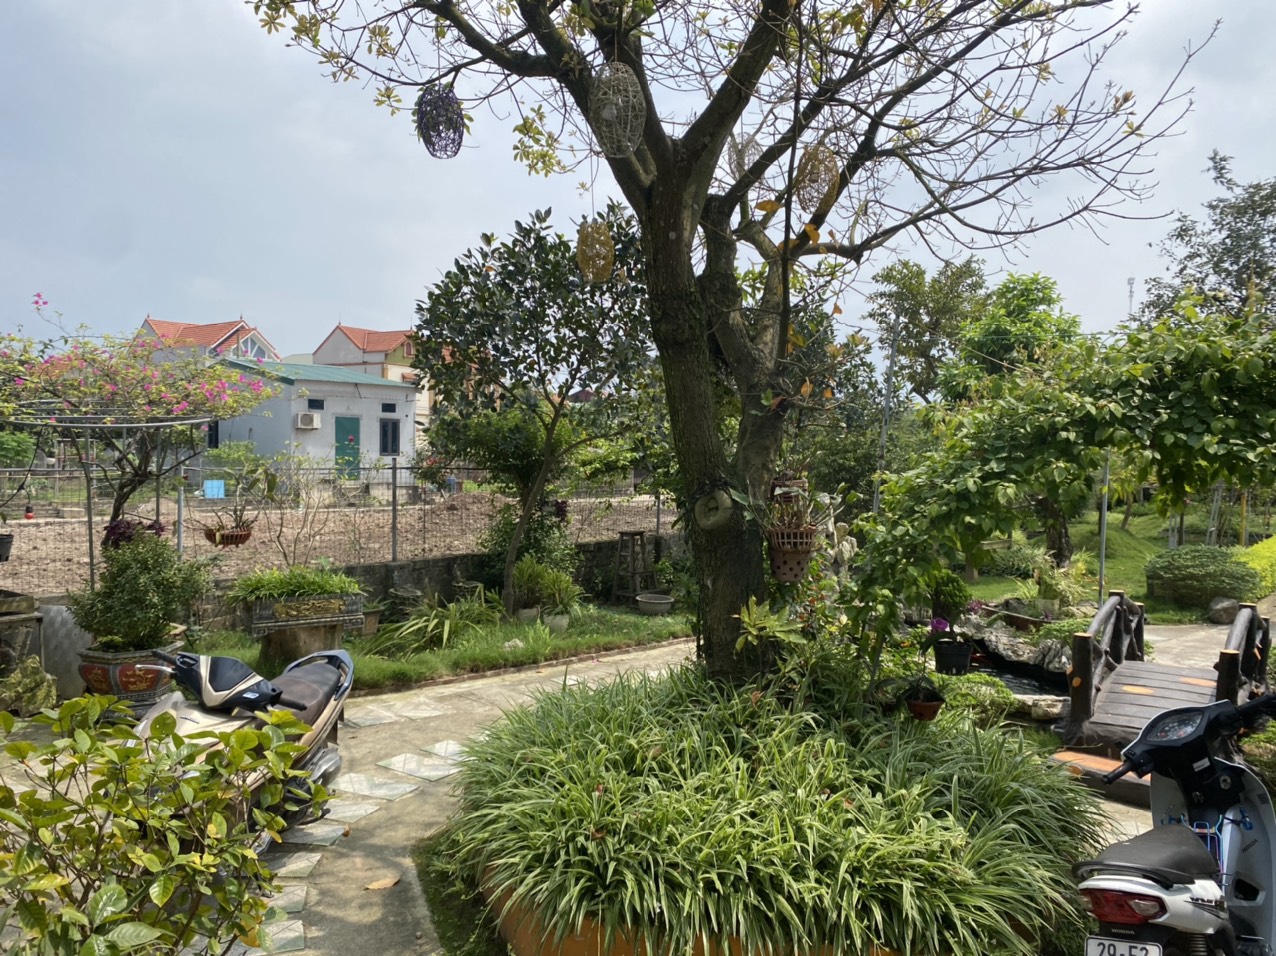 Chính chủ cần tiền bán nhà vườn tại khu du lịch sinh thái Hồng Vân - Thường Tín - Hà Nội. - Ảnh 2